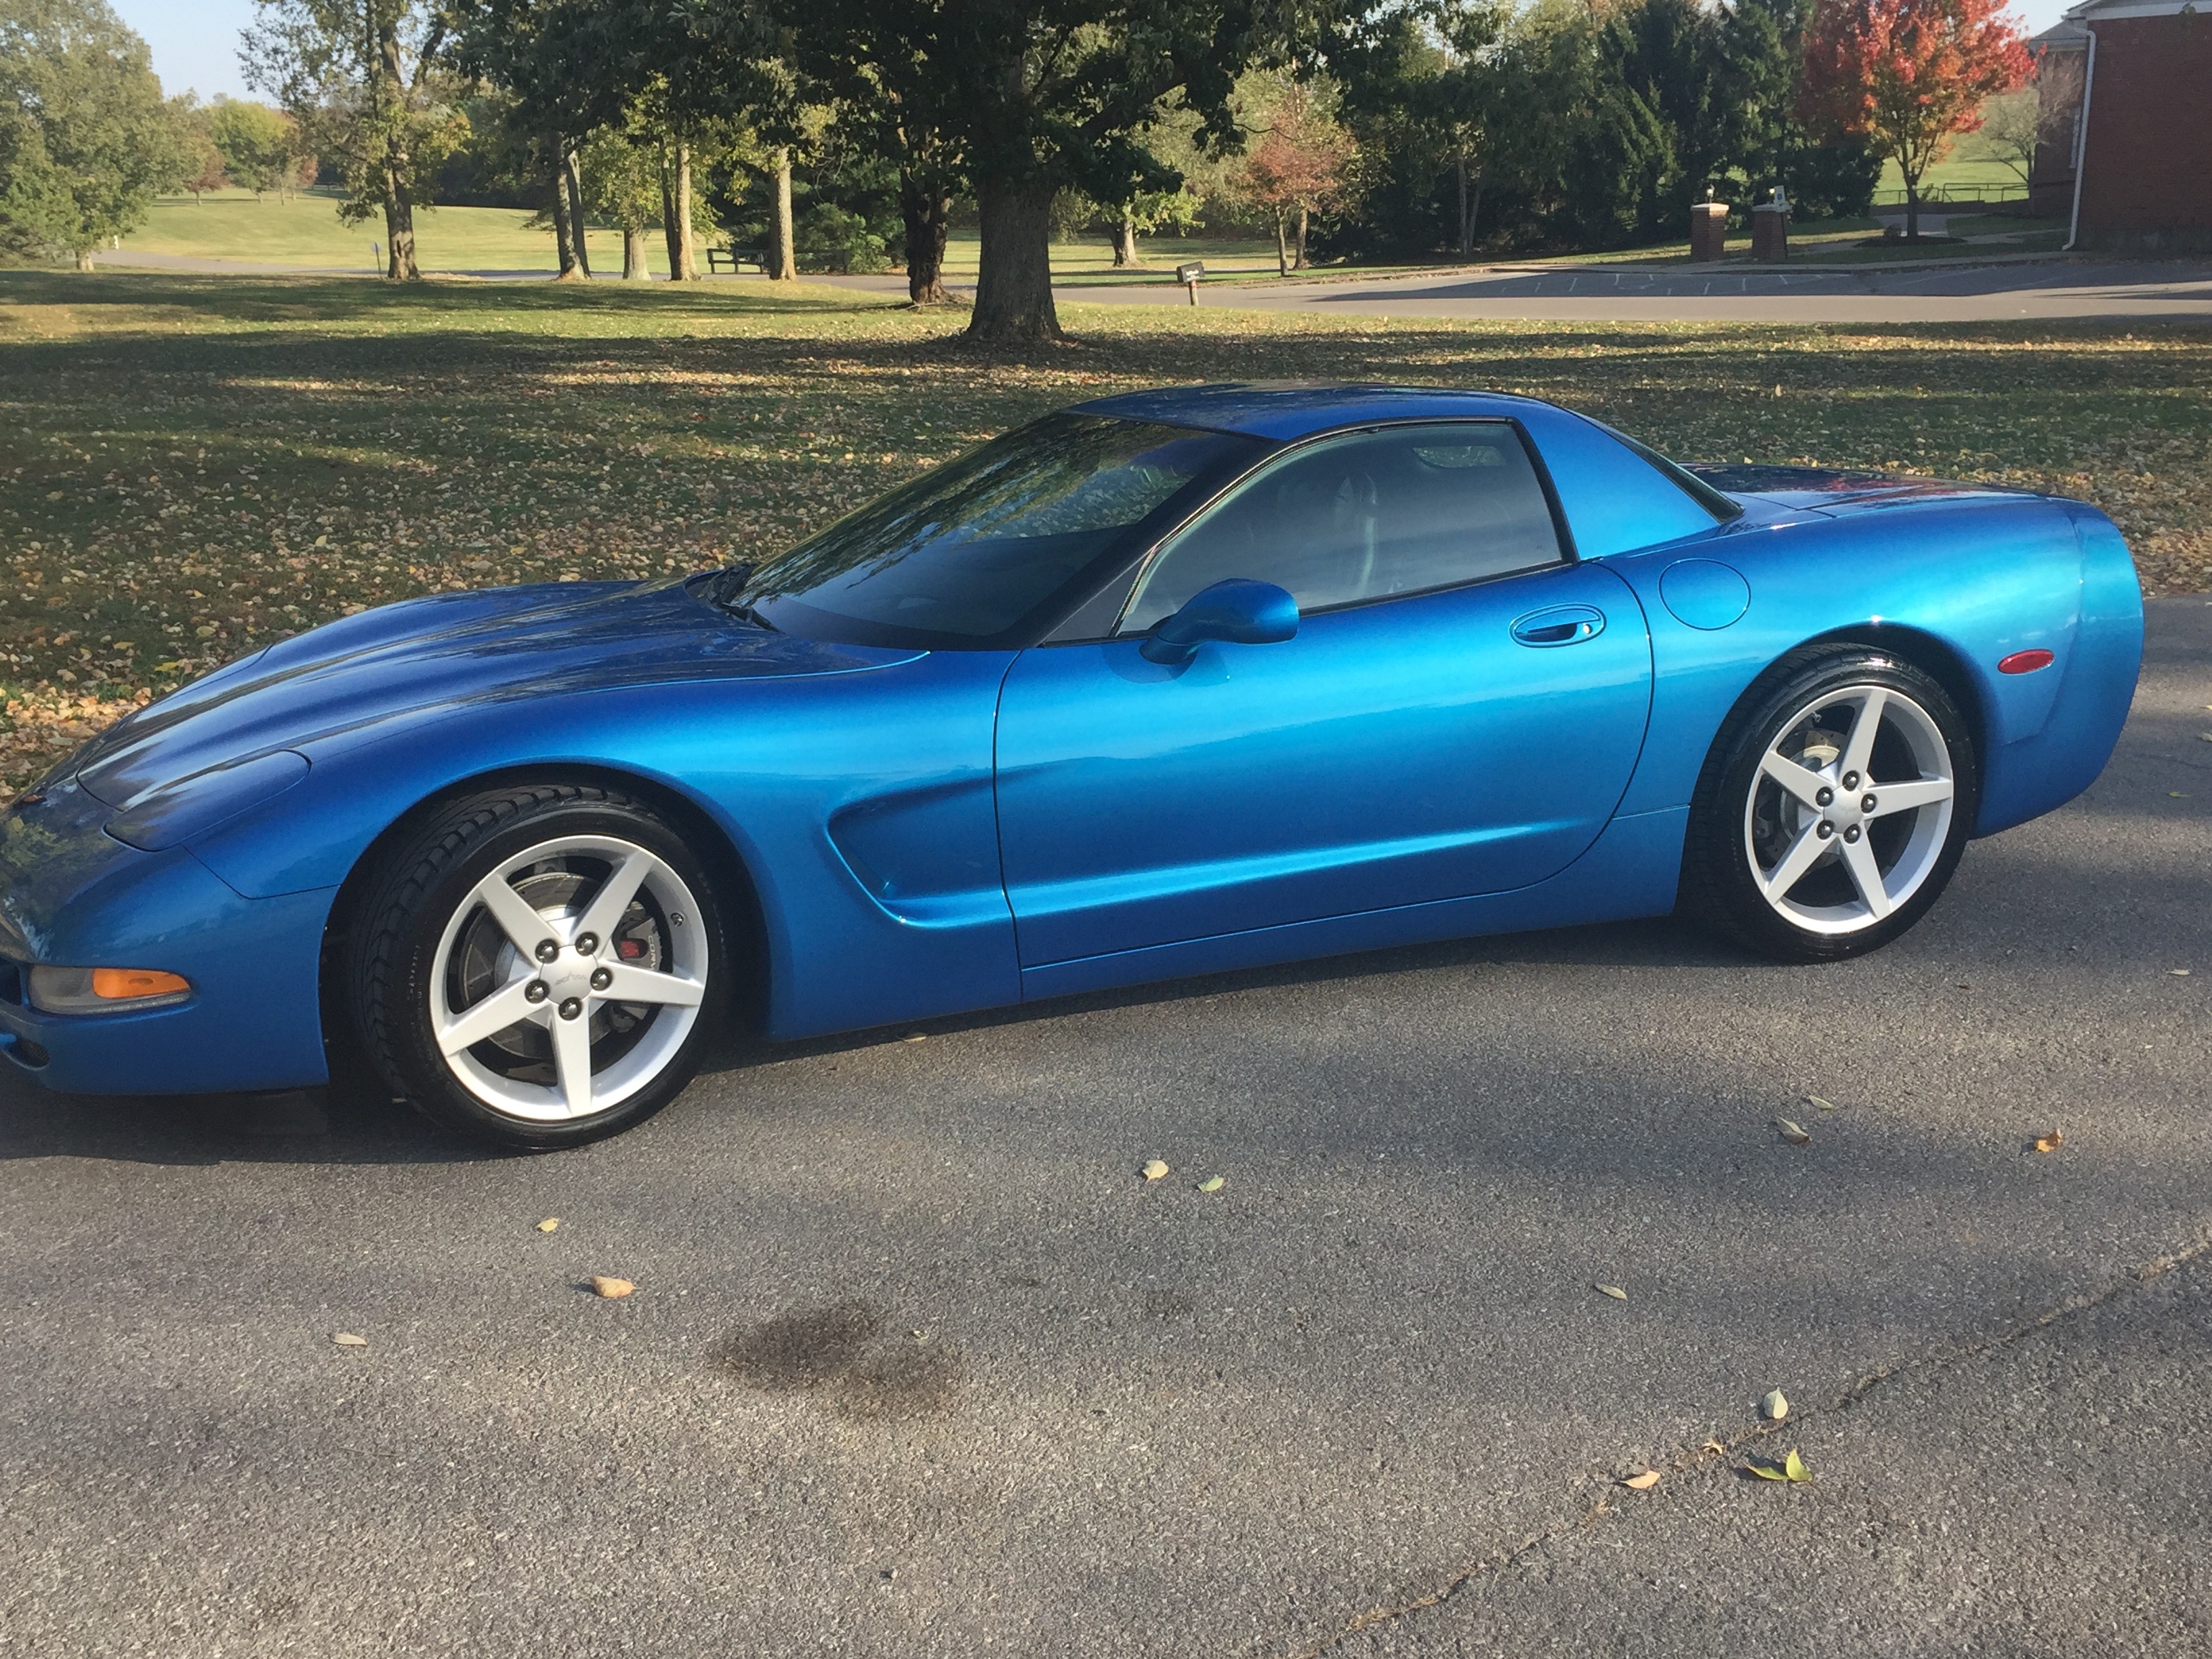 Nassau Blue Corvette 25